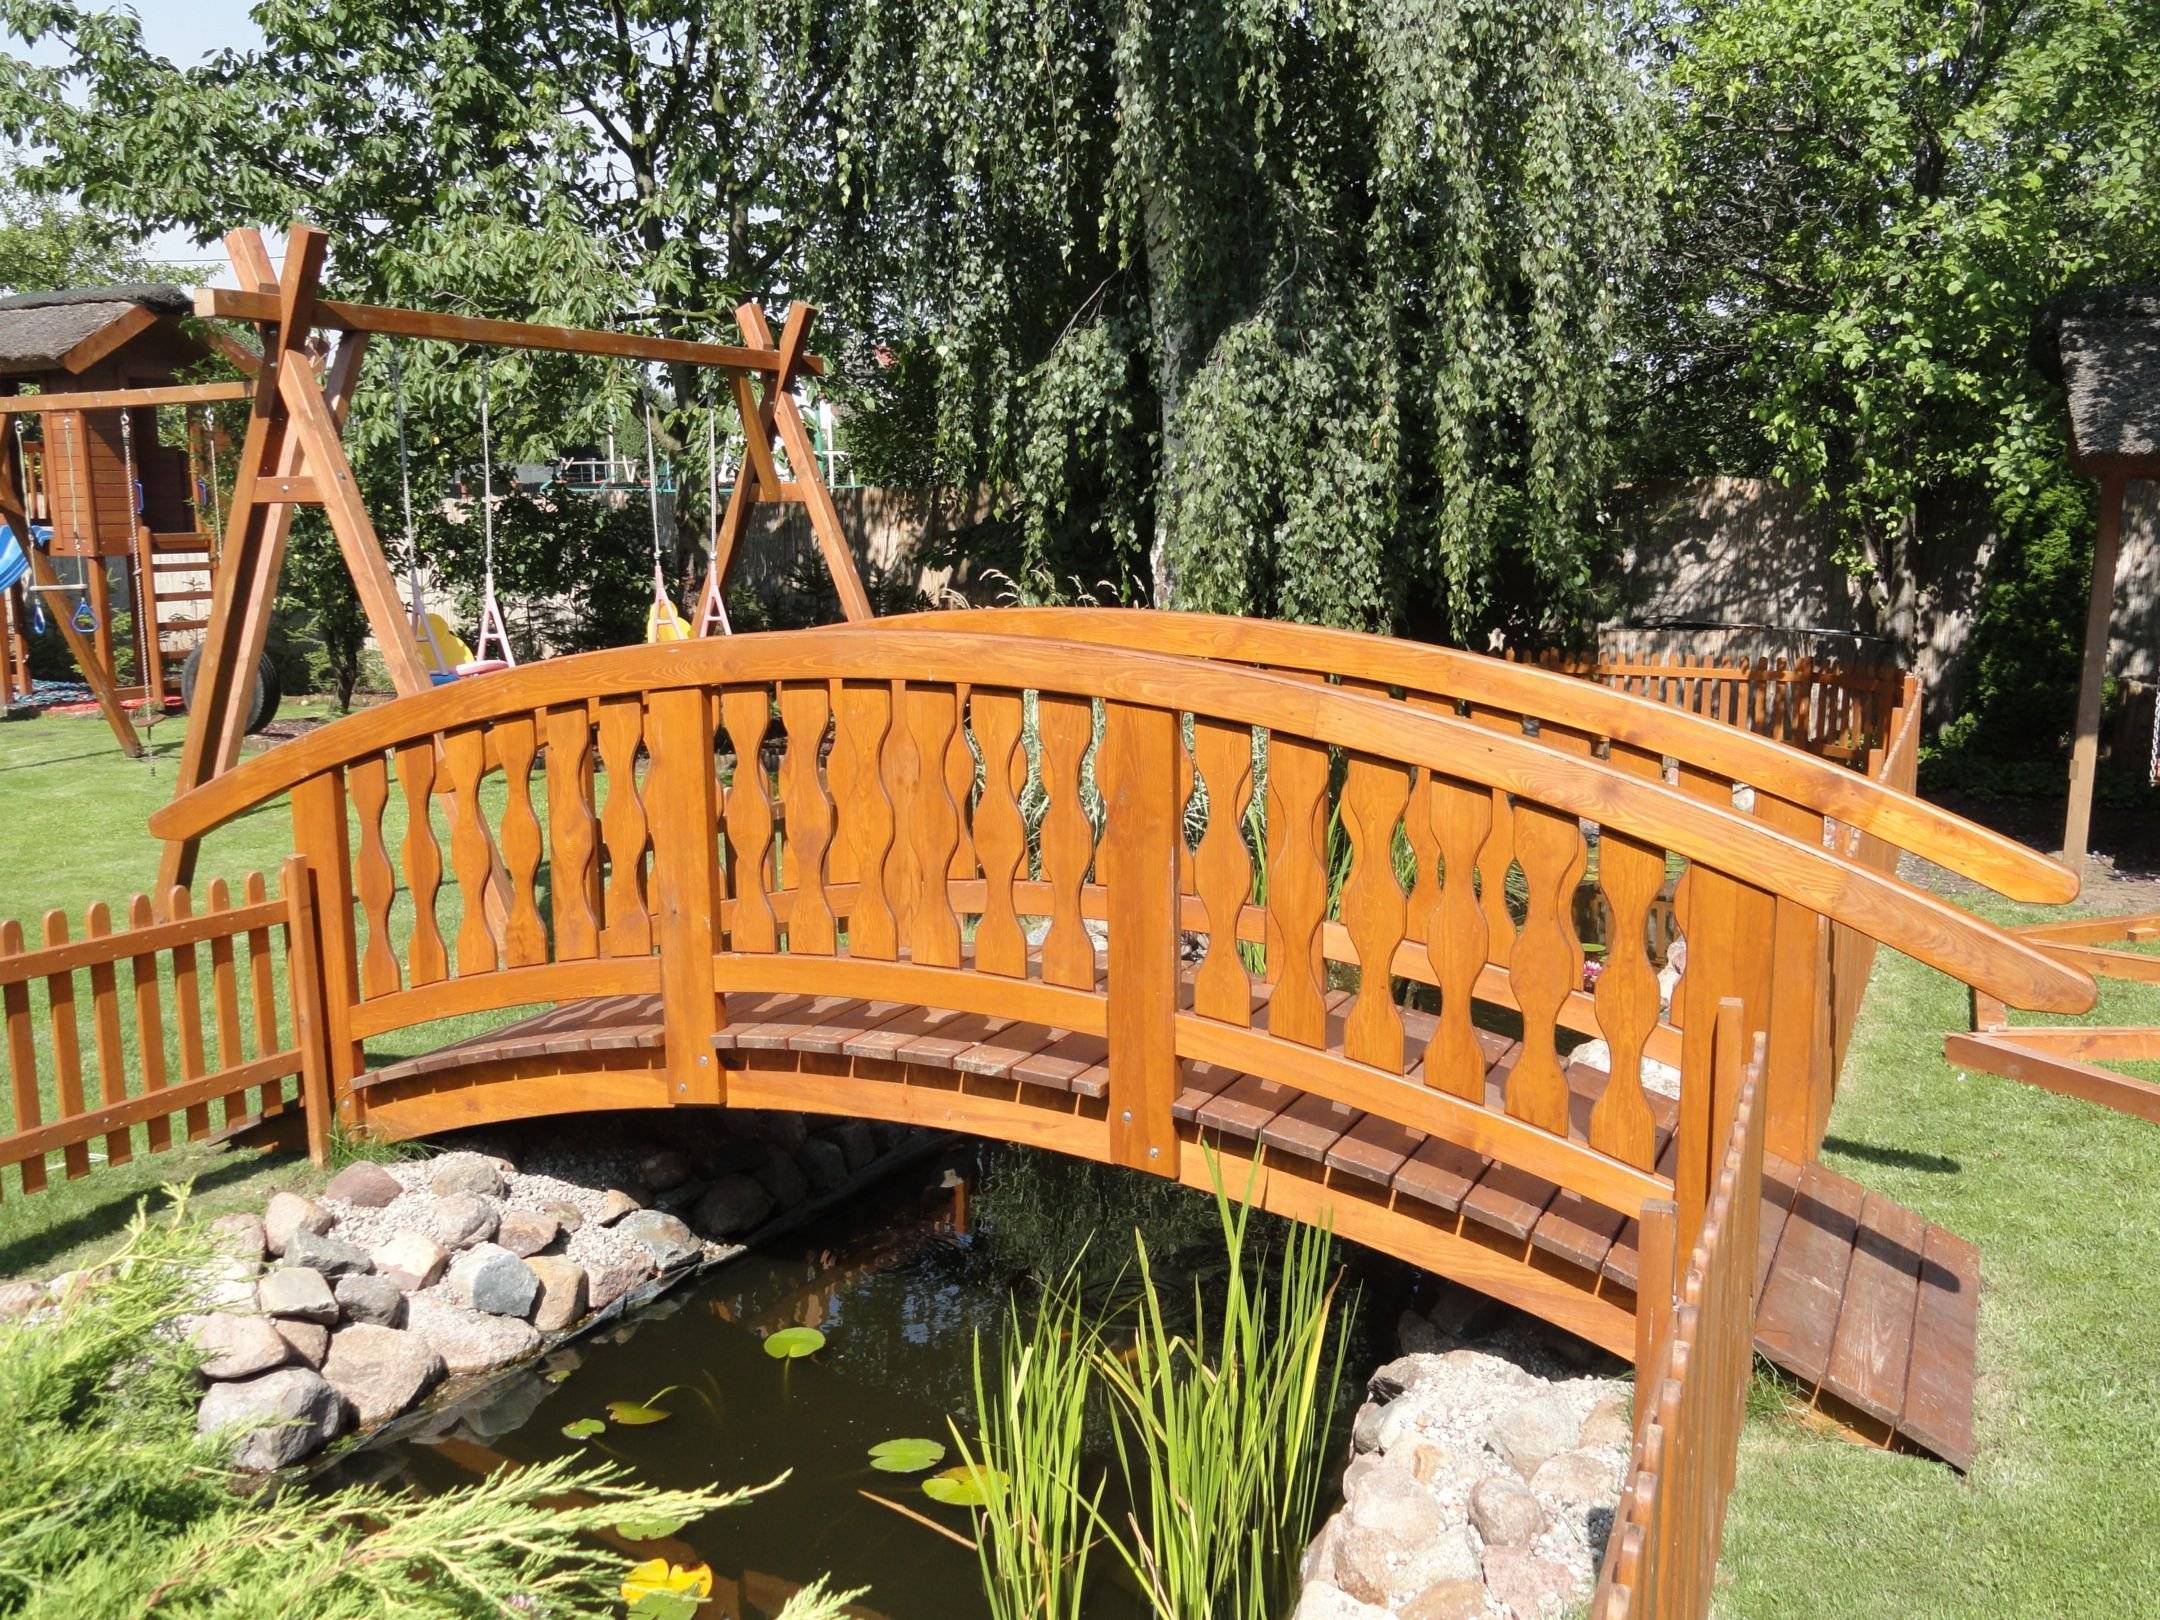 Декоративный мостик в ландшафтном дизайне сада: из чего построить и как оформить, украсить